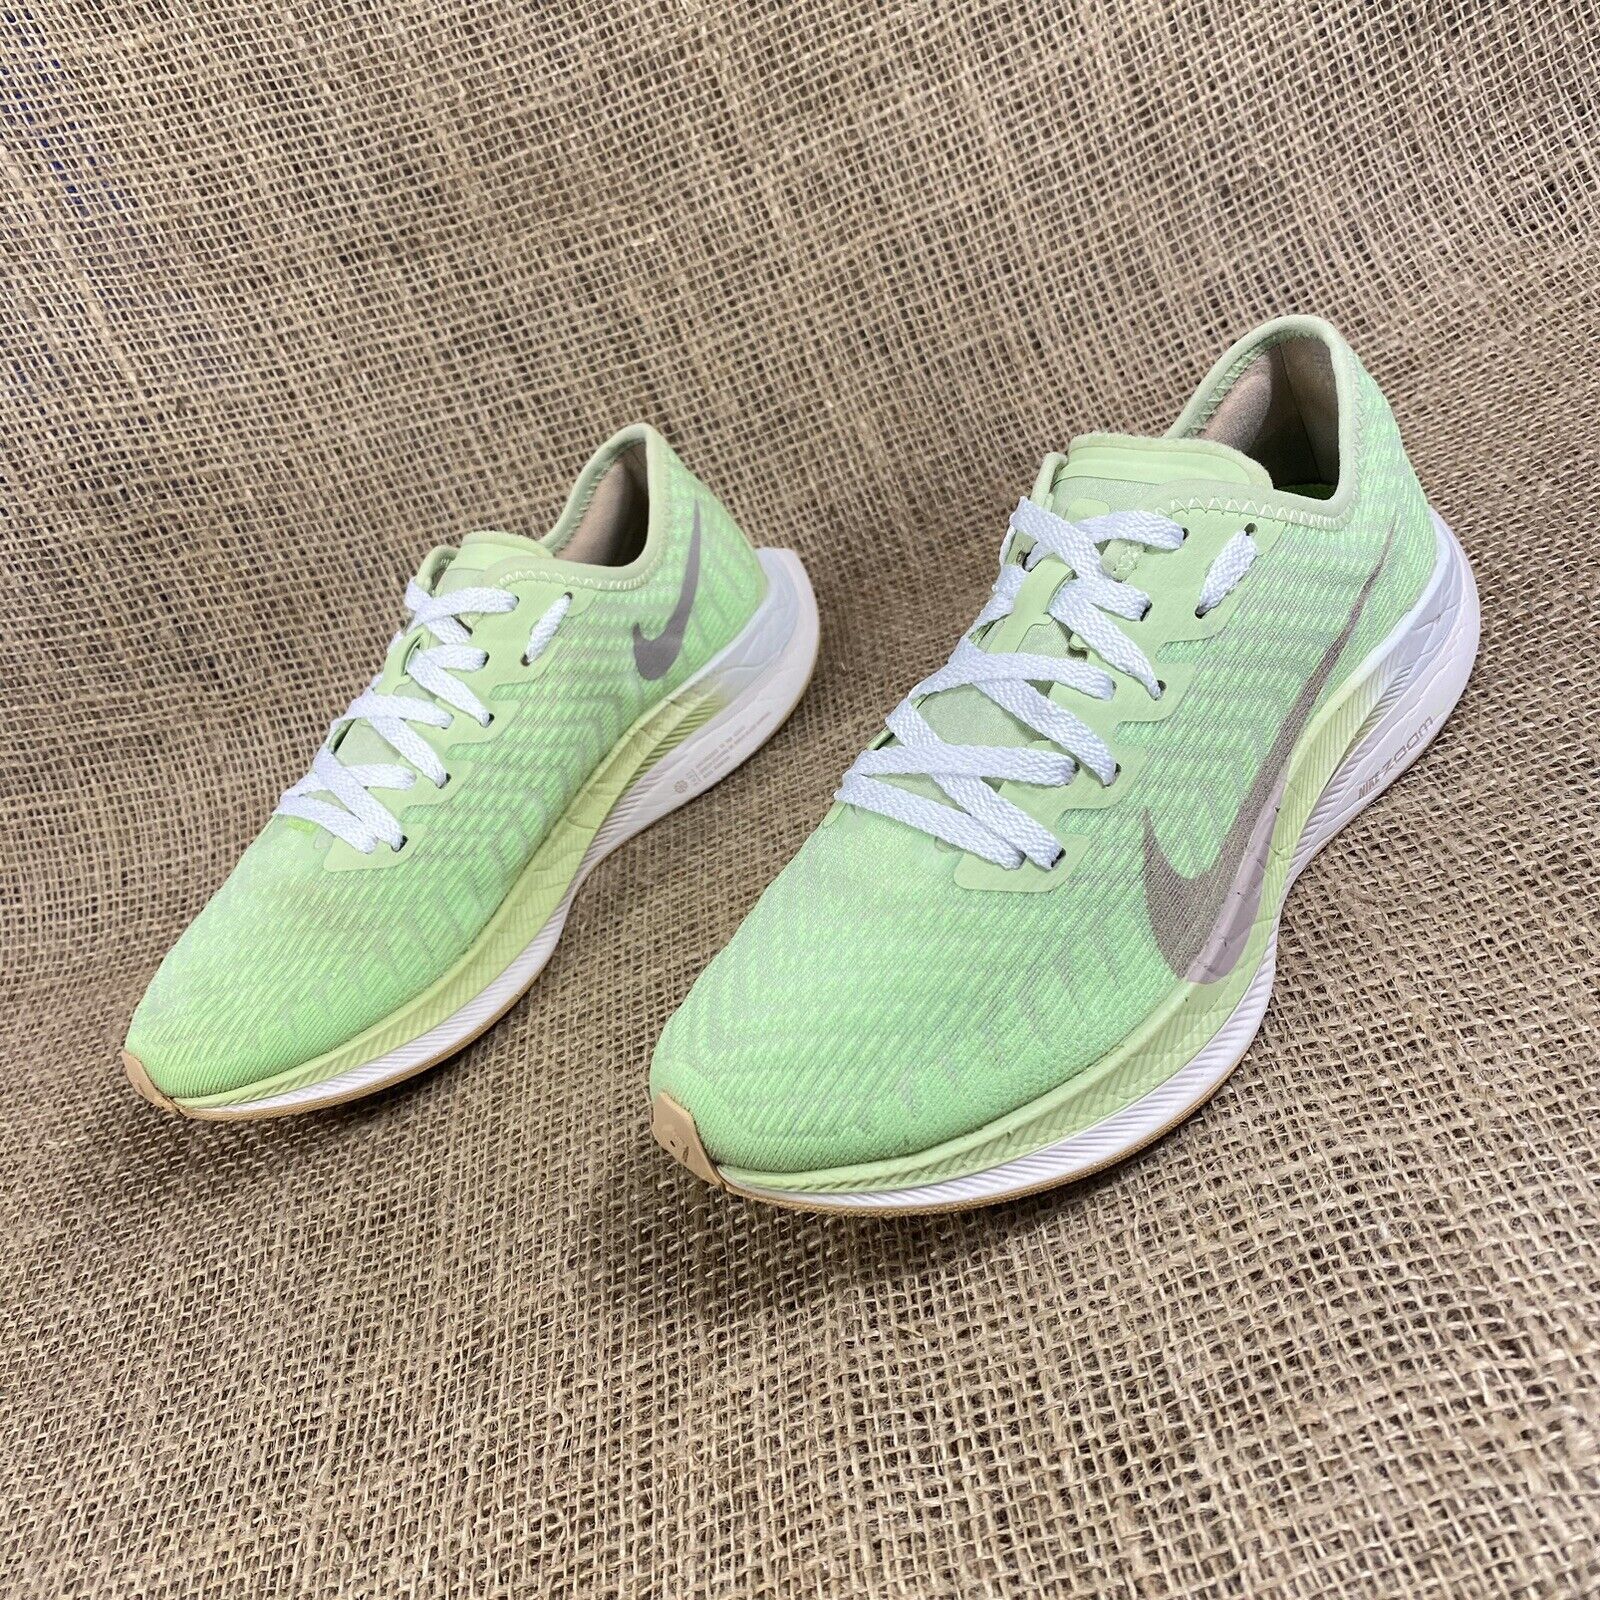 Nike Air Zoom Running Shoes Pegasus Lab Green Women's Size 7.5 | eBay